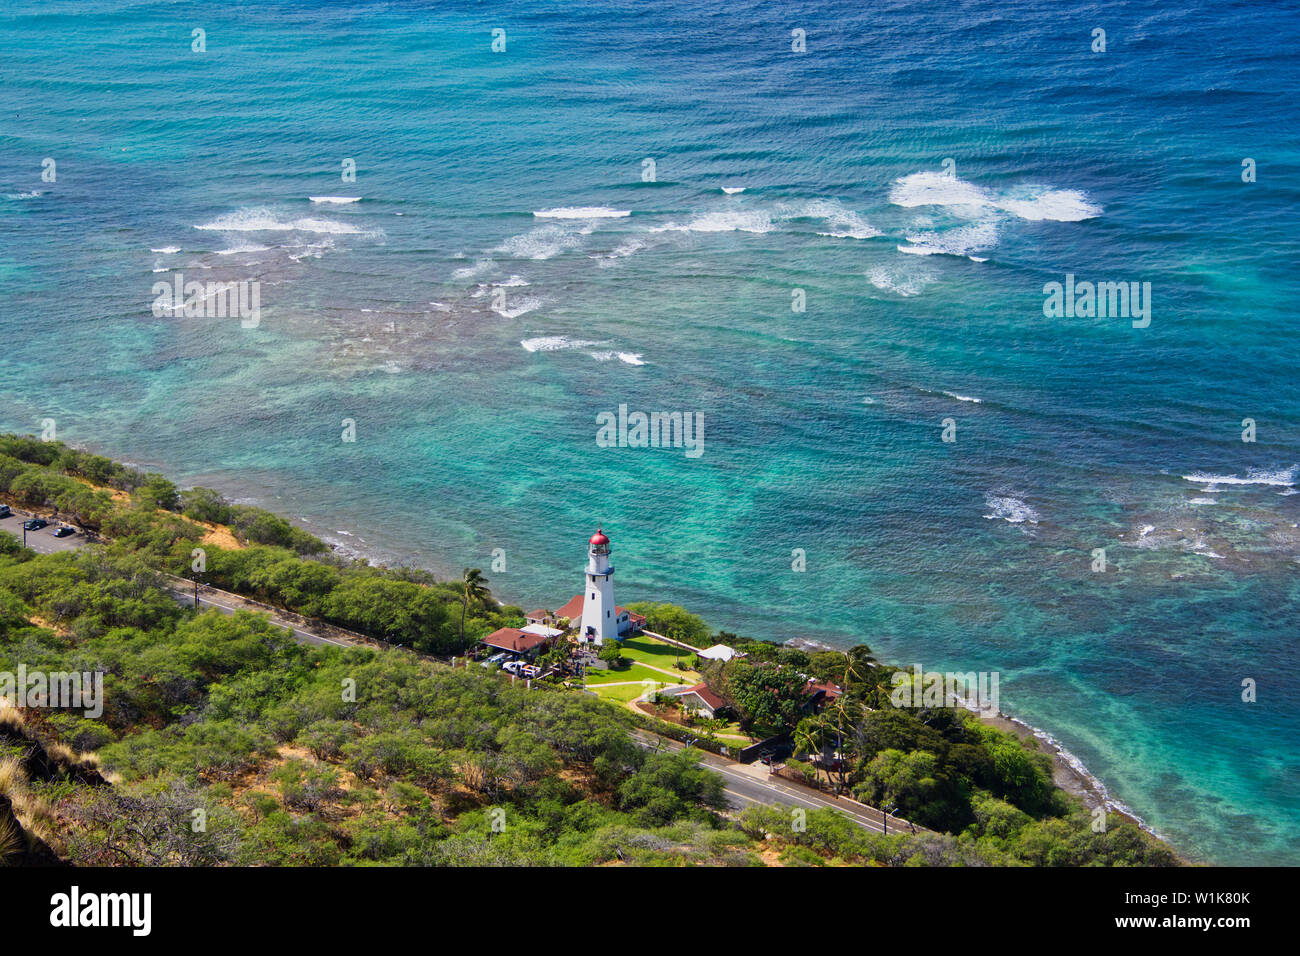 Dies ist der Blick vom Aussichtspunkt auf Diamond Head auf Oahu, Hawaii. Während es eine etwas langweilige Foto, ich liebe das Wasser Farbe. Stockfoto